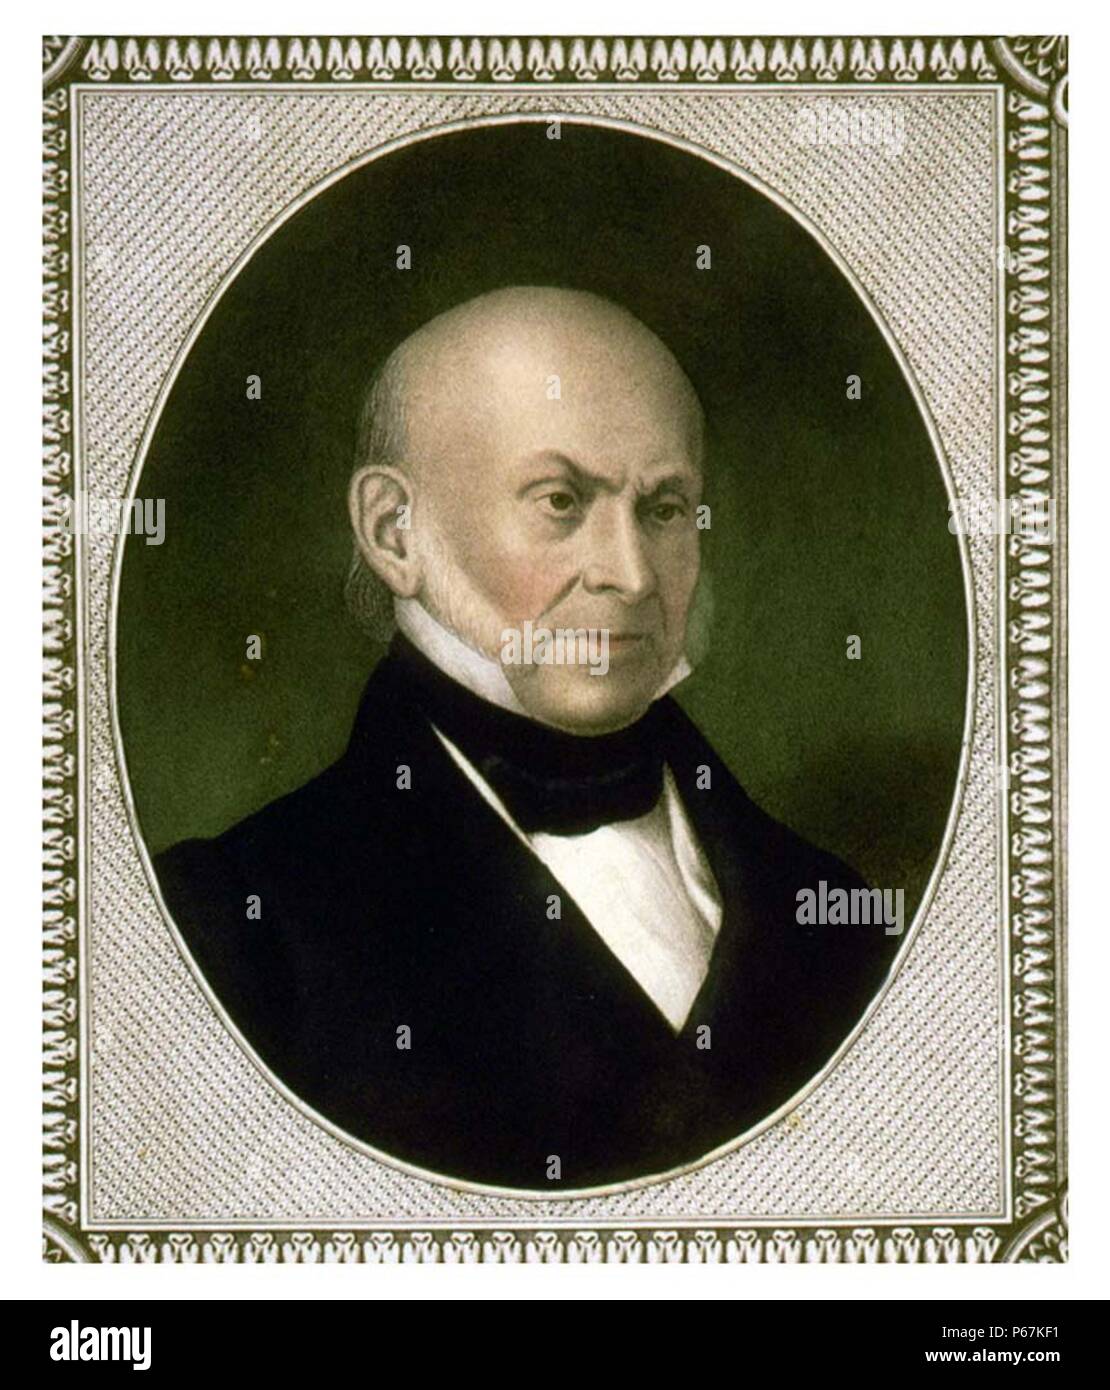 John Quincy Adams è stato uno statista americano che ha servito come il sesto presidente degli Stati Uniti dal 1825 al 1829. Egli ha anche servito come un diplomatico, un senatore e membro della Camera dei rappresentanti. Foto Stock